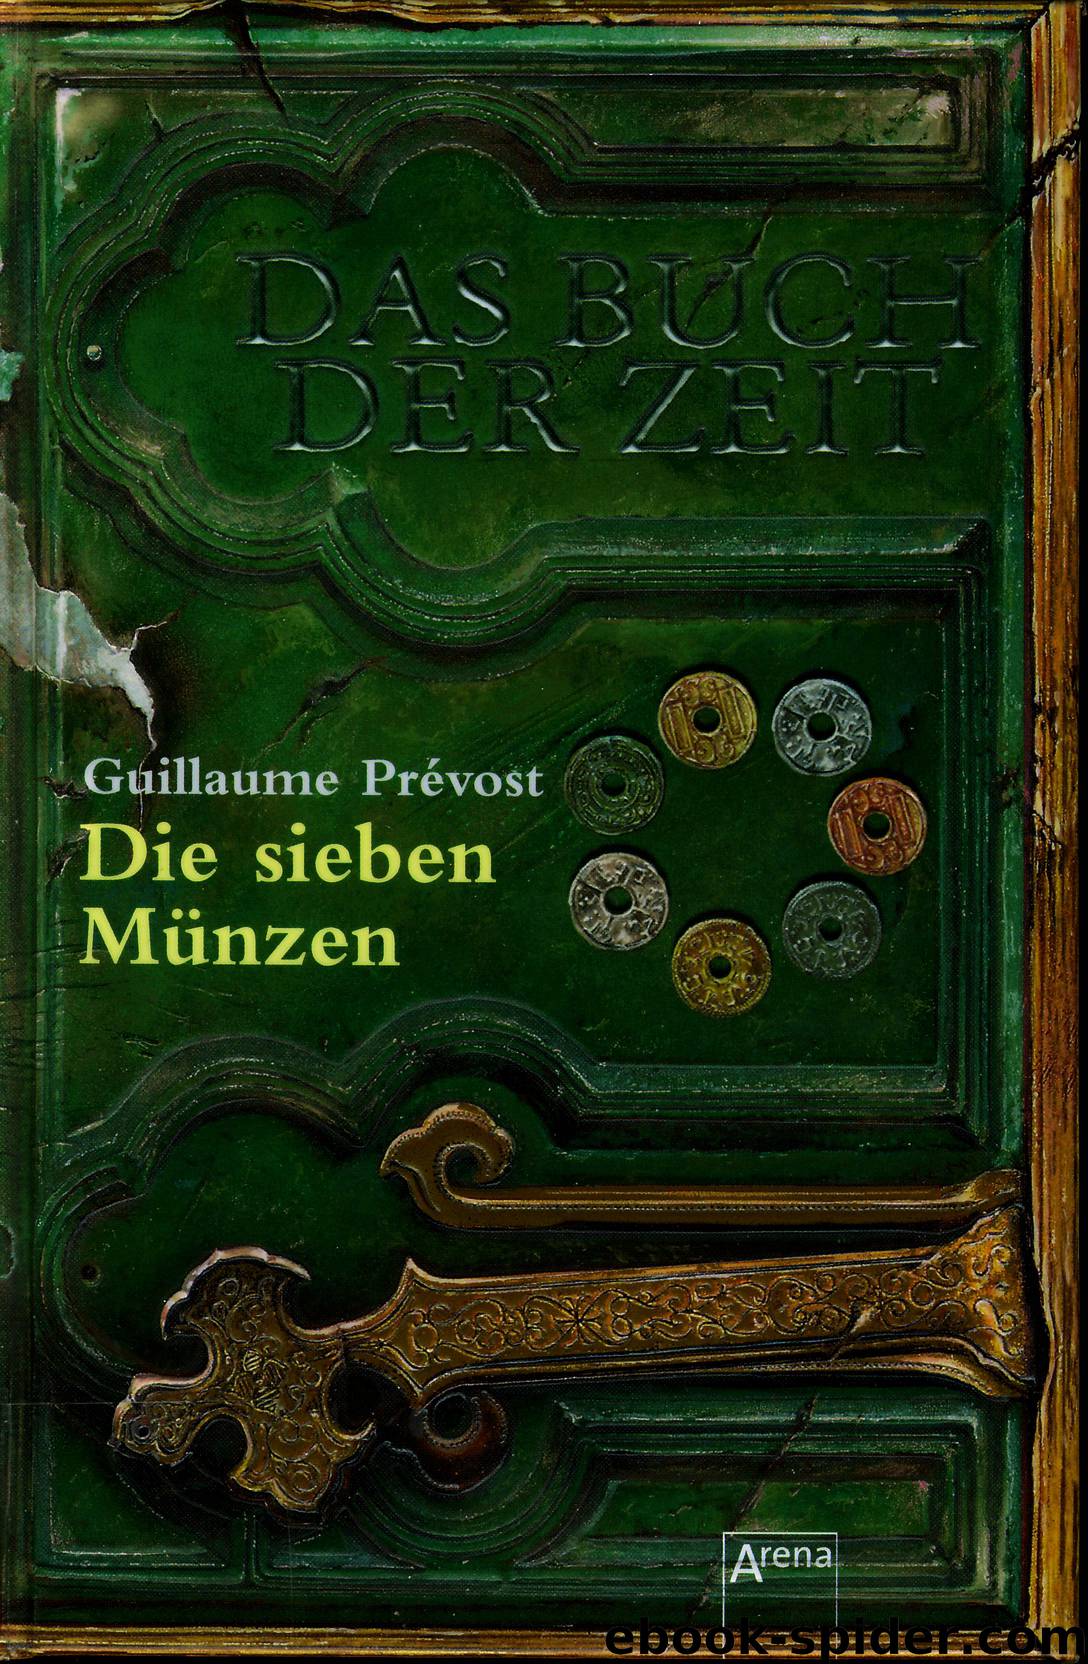 Das Buch der Zeit- die sieben Münzen by Guillaume Prevost